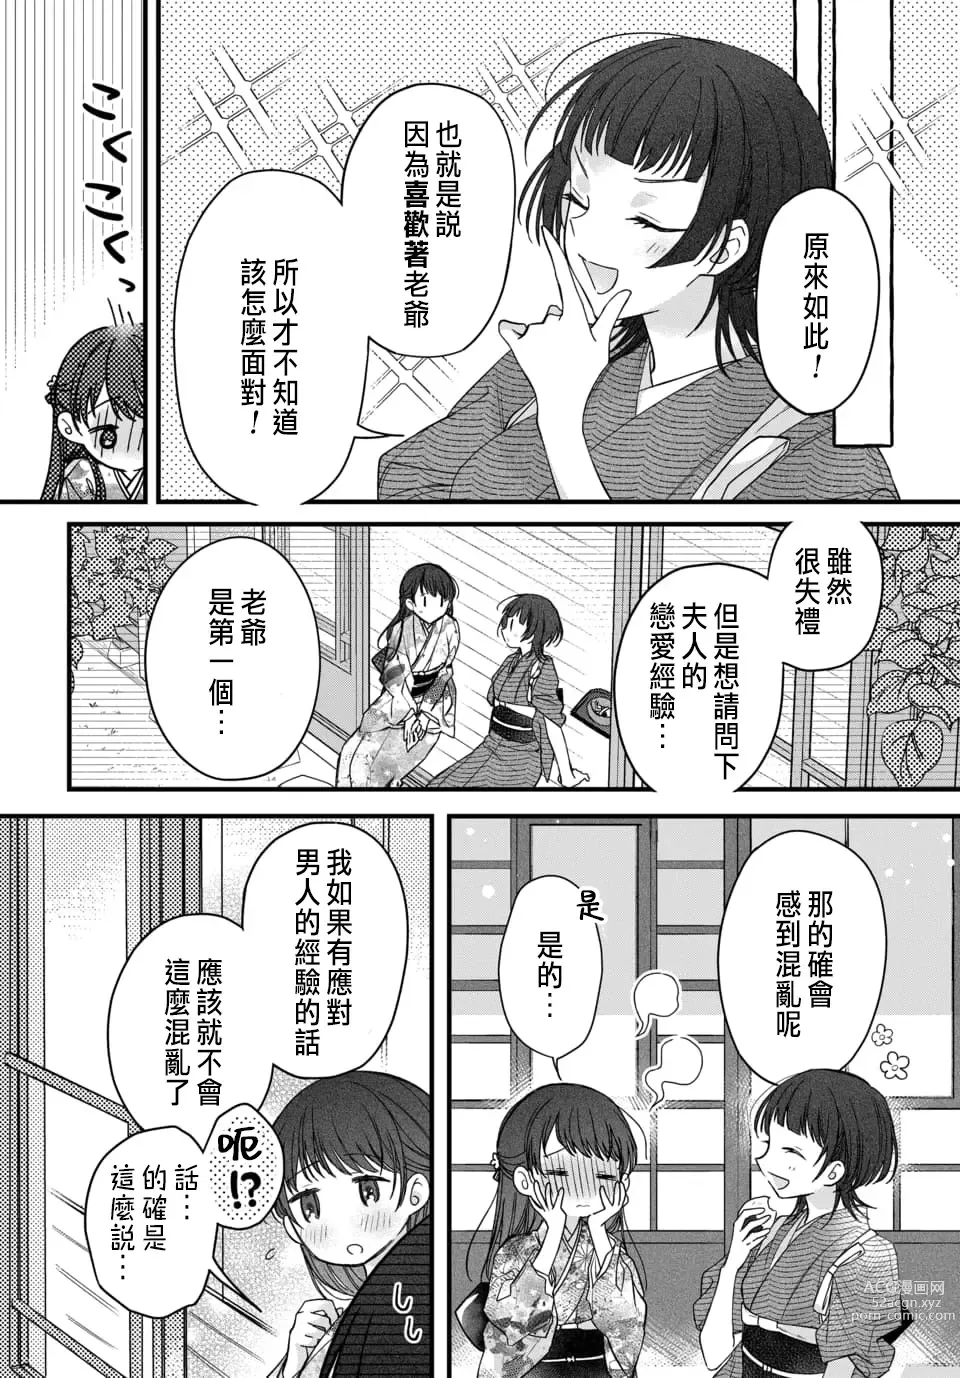 Page 223 of manga Tsuki e no Yomeiri 1-6